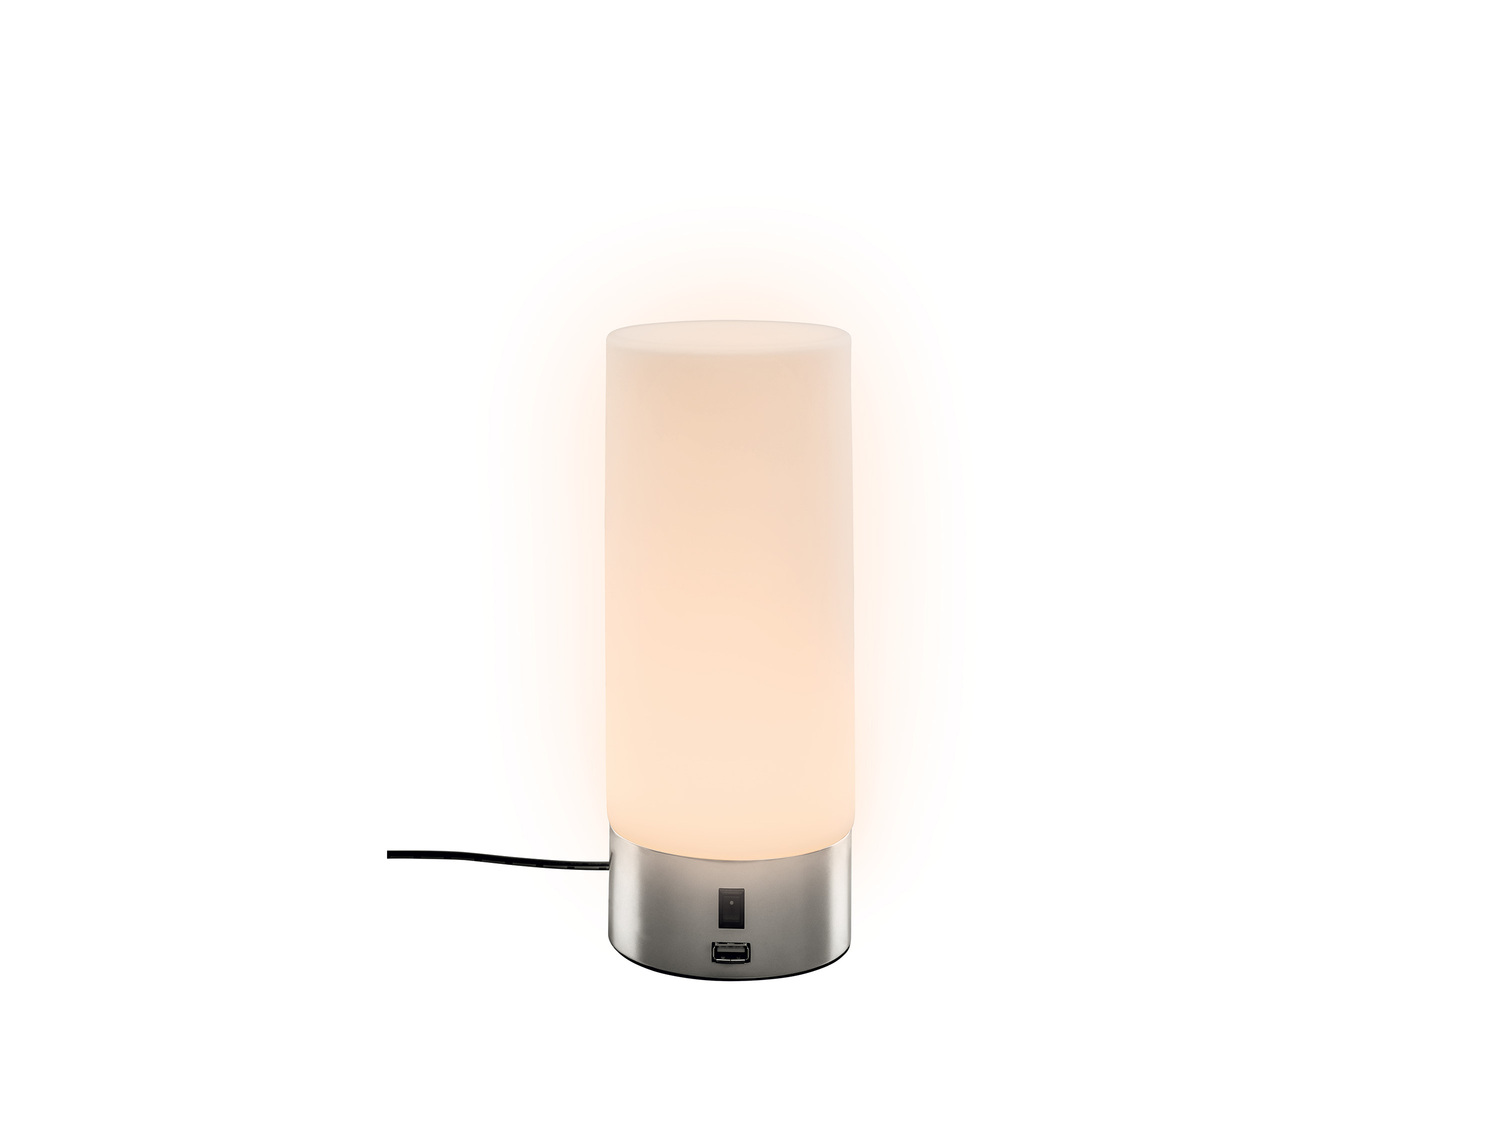 Lampe de table à LED avec USB , le prix 14.99 € 
- Au choix : env. 10 x 24,5 ...